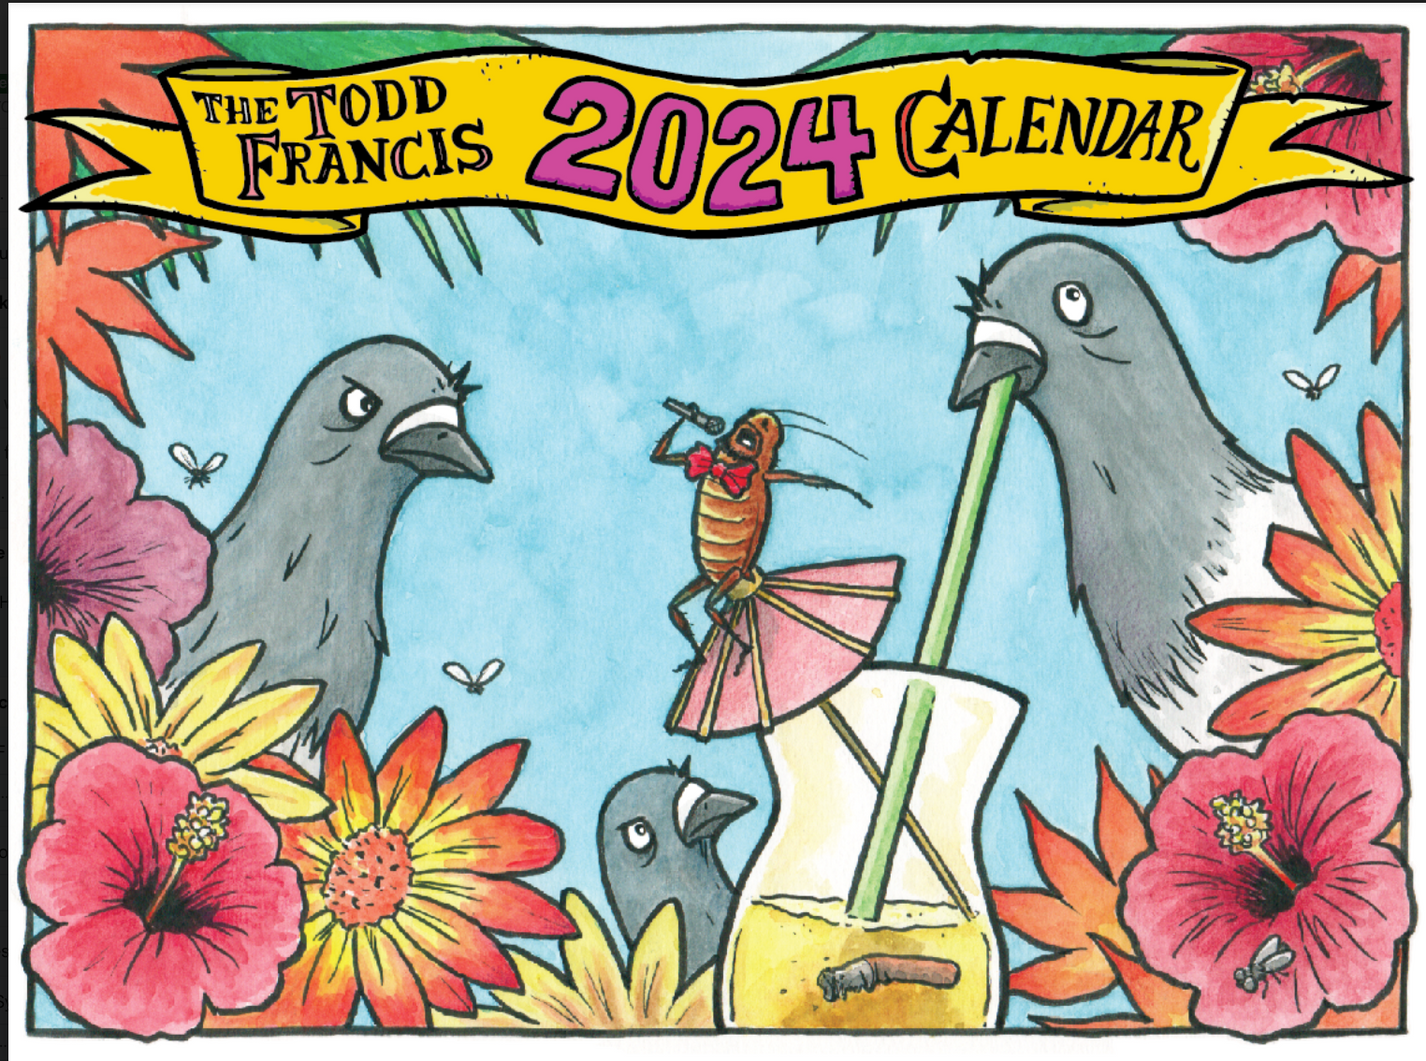 The Todd Francis 2024 Calendar - Apple Valley Emporium